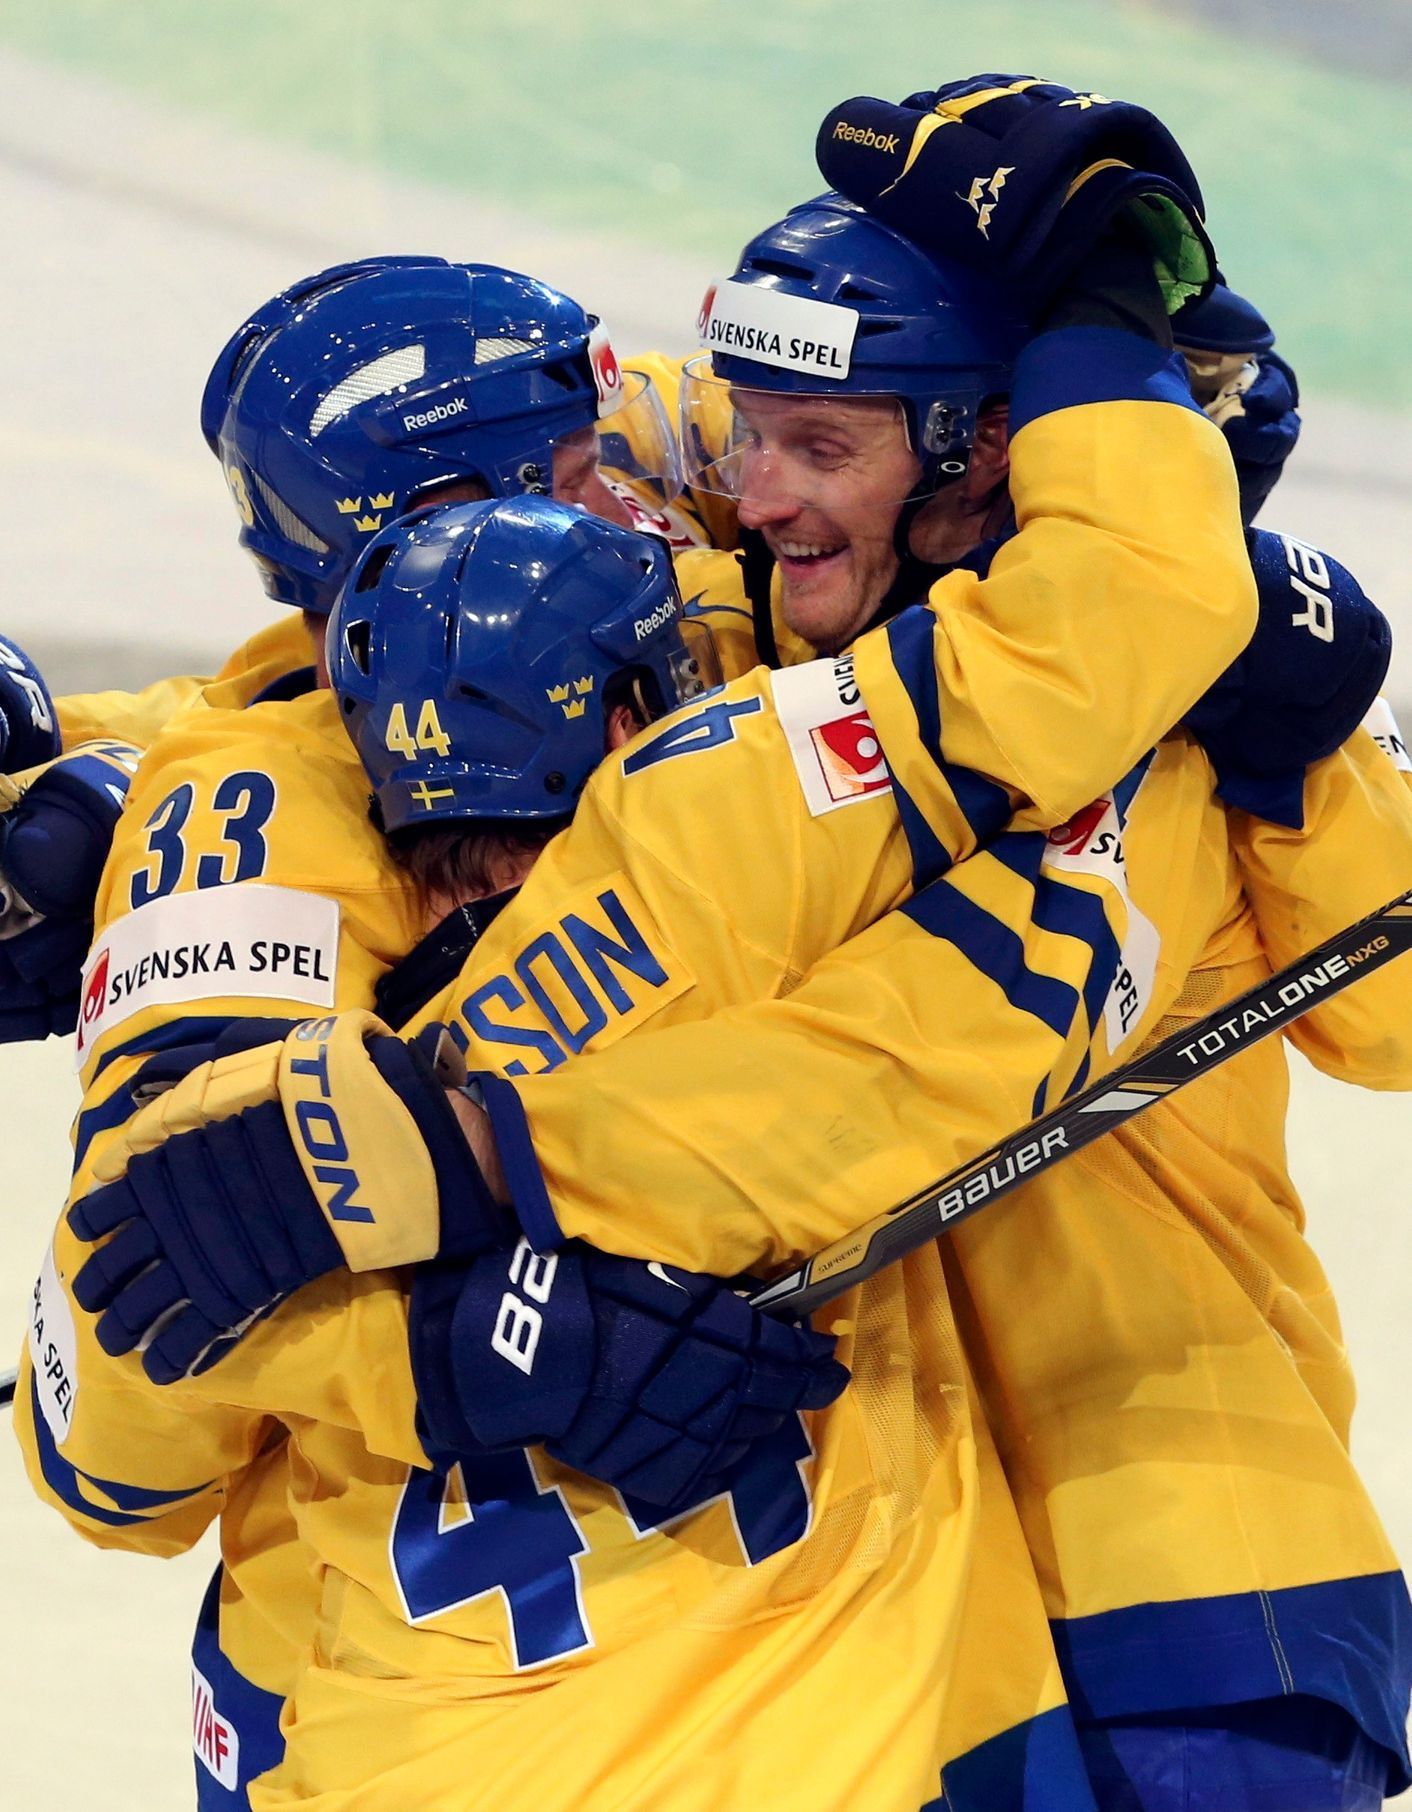 Hokej, MS 2013, Švédsko - Kanada: švédská radost